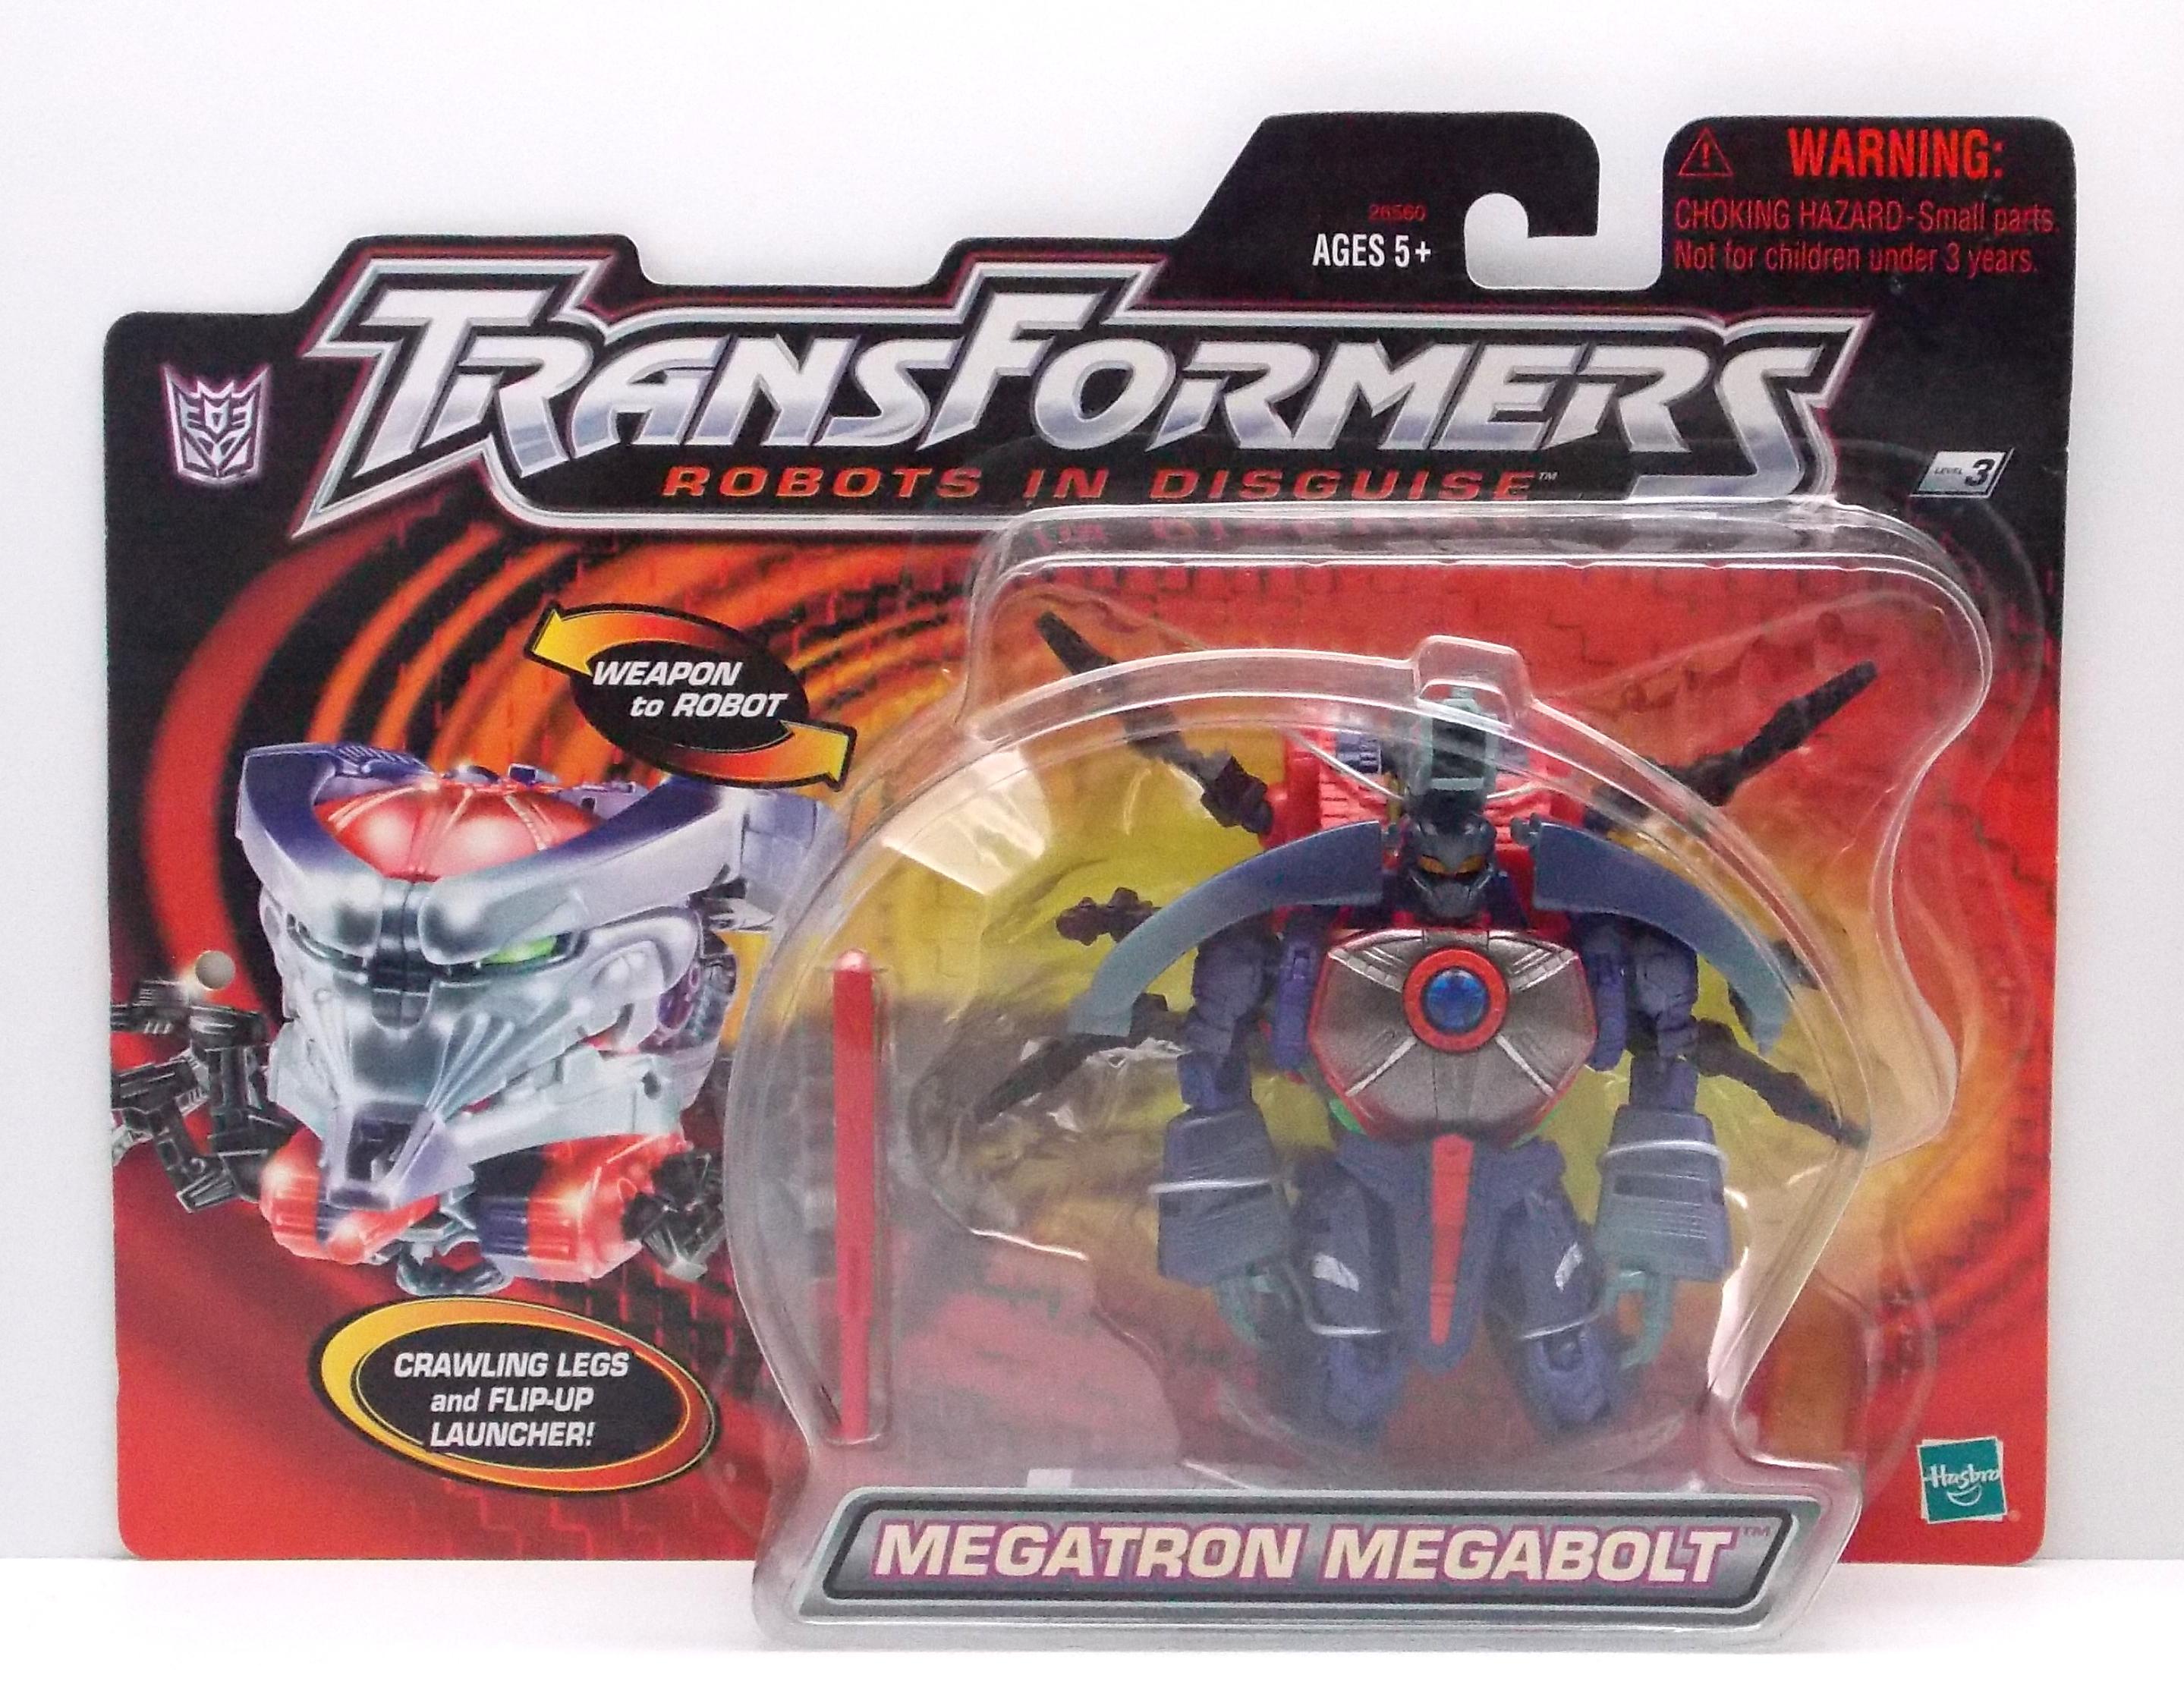 Transformers Megatron Megabolt Robots in Disguise Figure